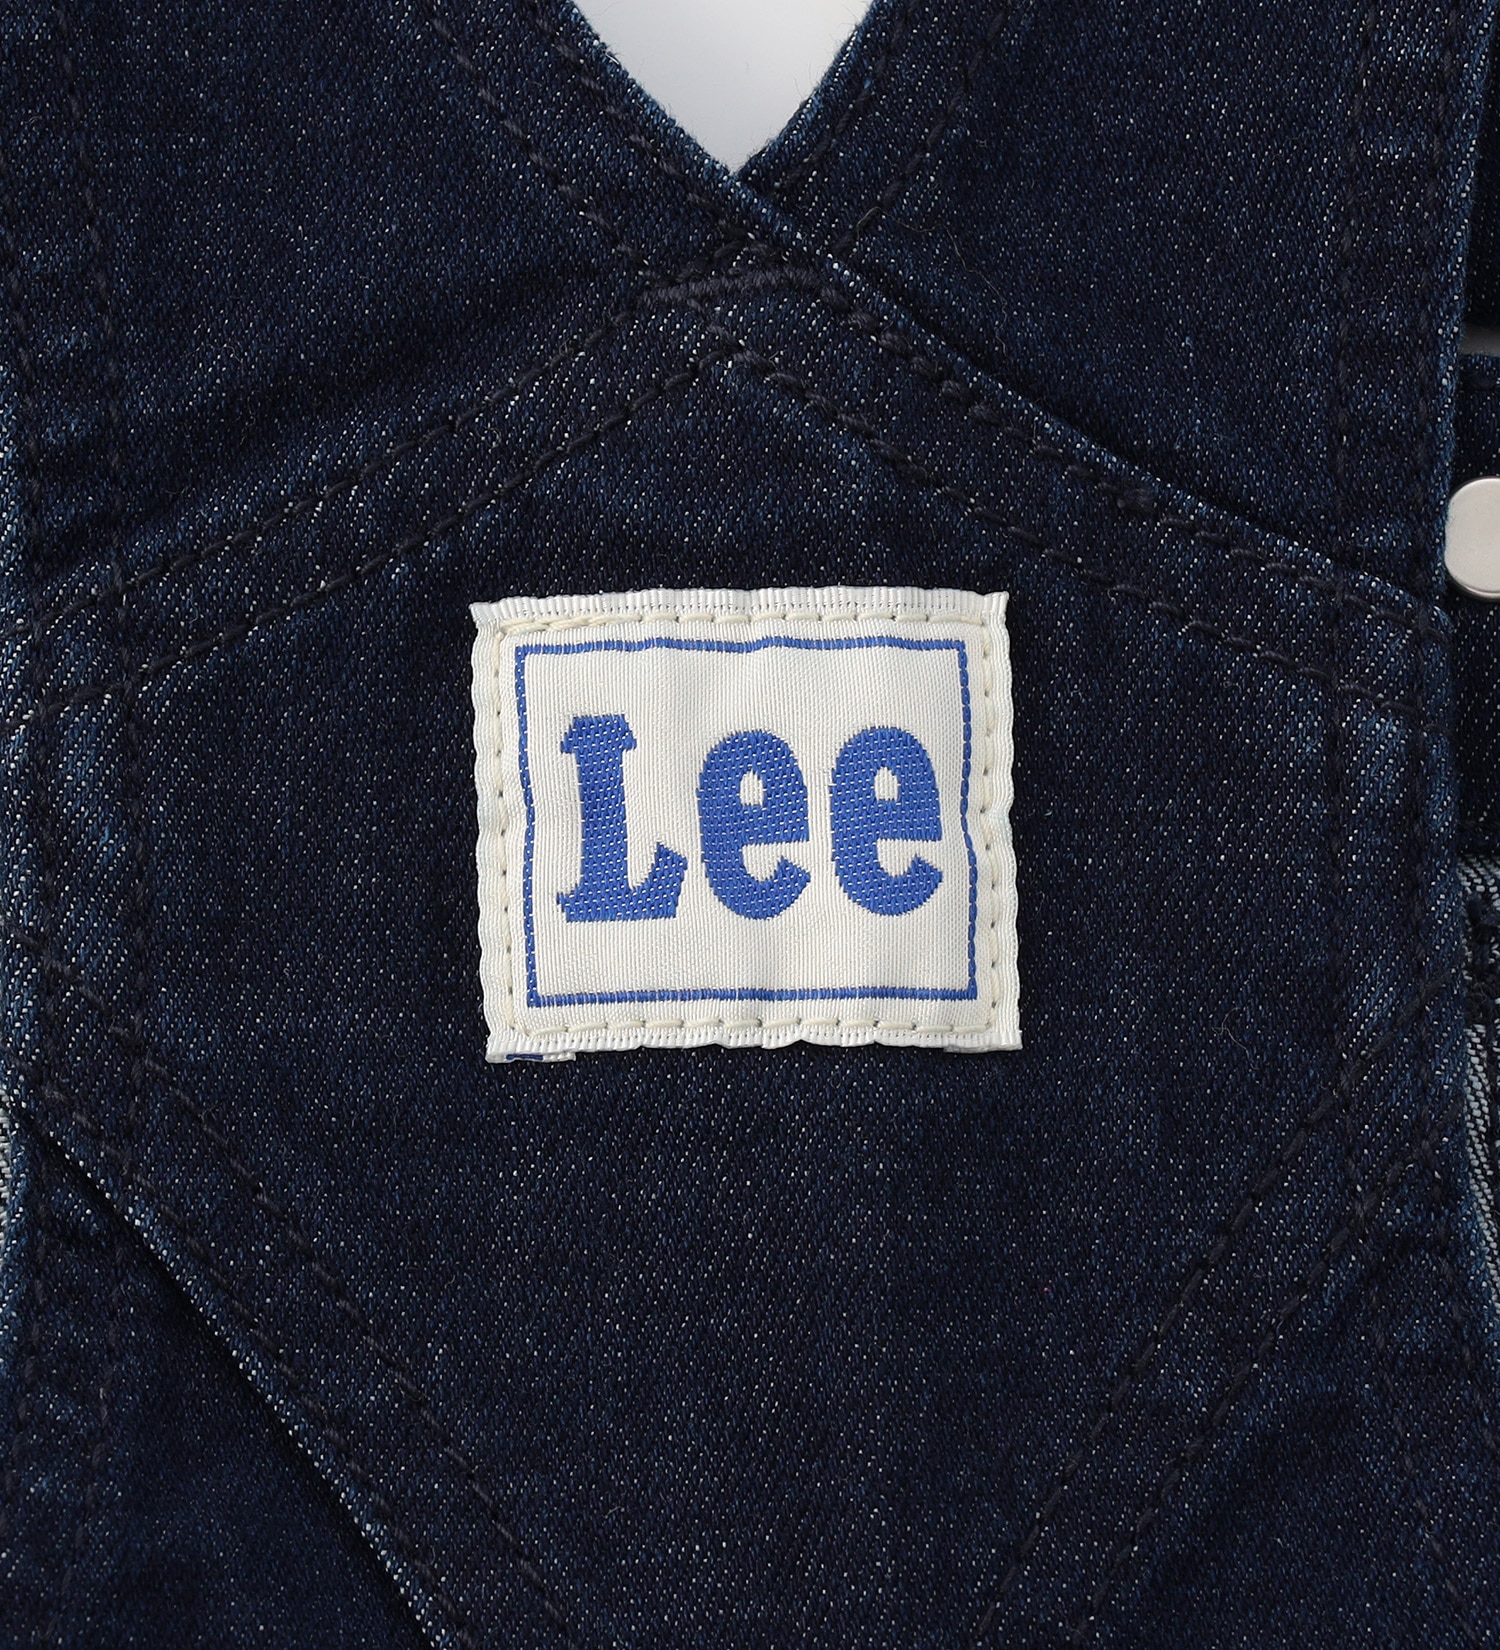 Lee(リー)の【80/90cm】ベビー ストレッチ オーバーオールショーツ|オールインワン/サロペット/オーバーオール/キッズ|インディゴブルー